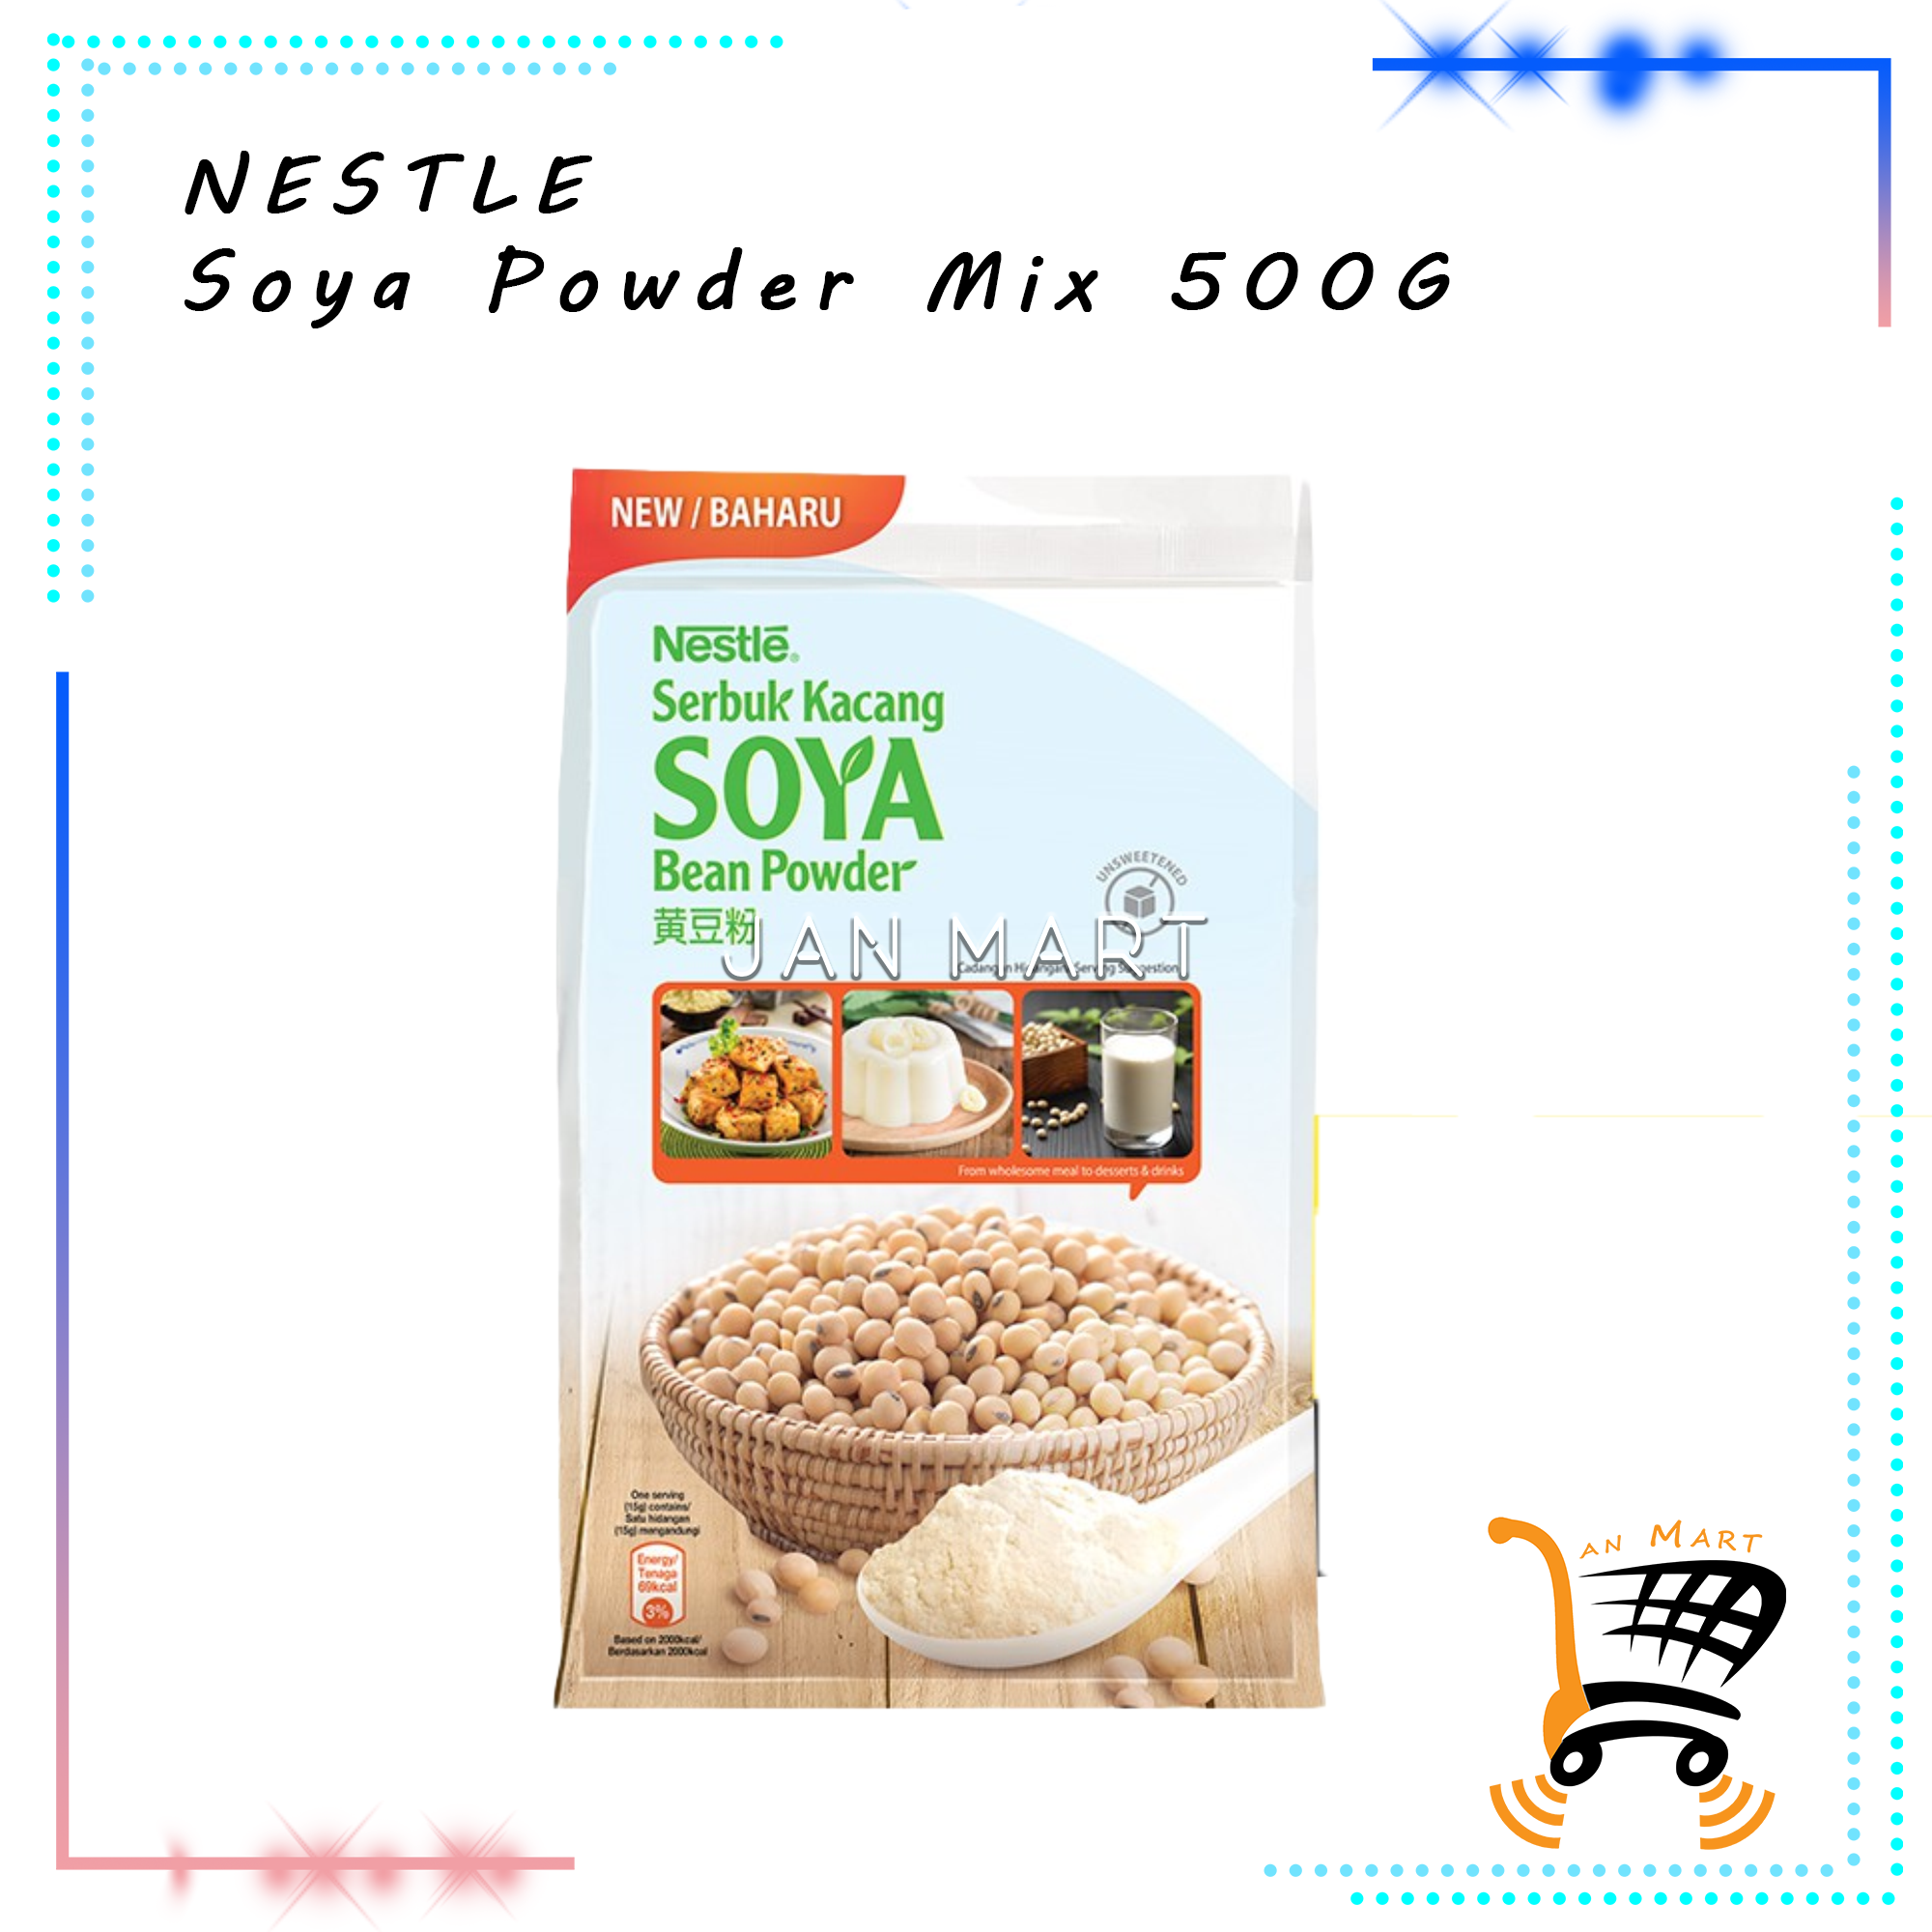 NESTLE Soya Powder Mix 500G